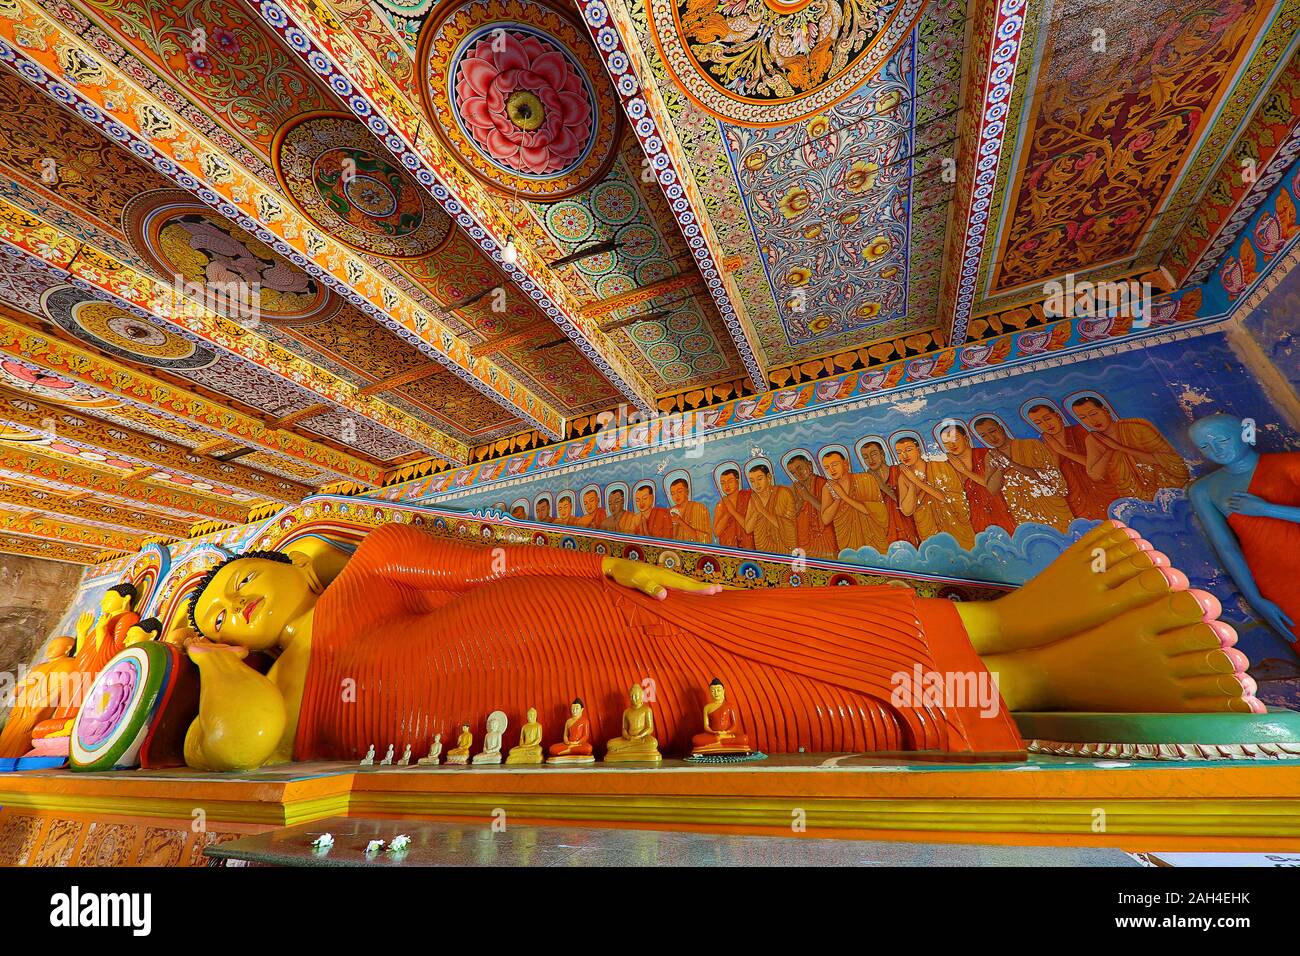 Statue of reclining Buddha, in Anuradhapura, Sri Lanka Stock Photo